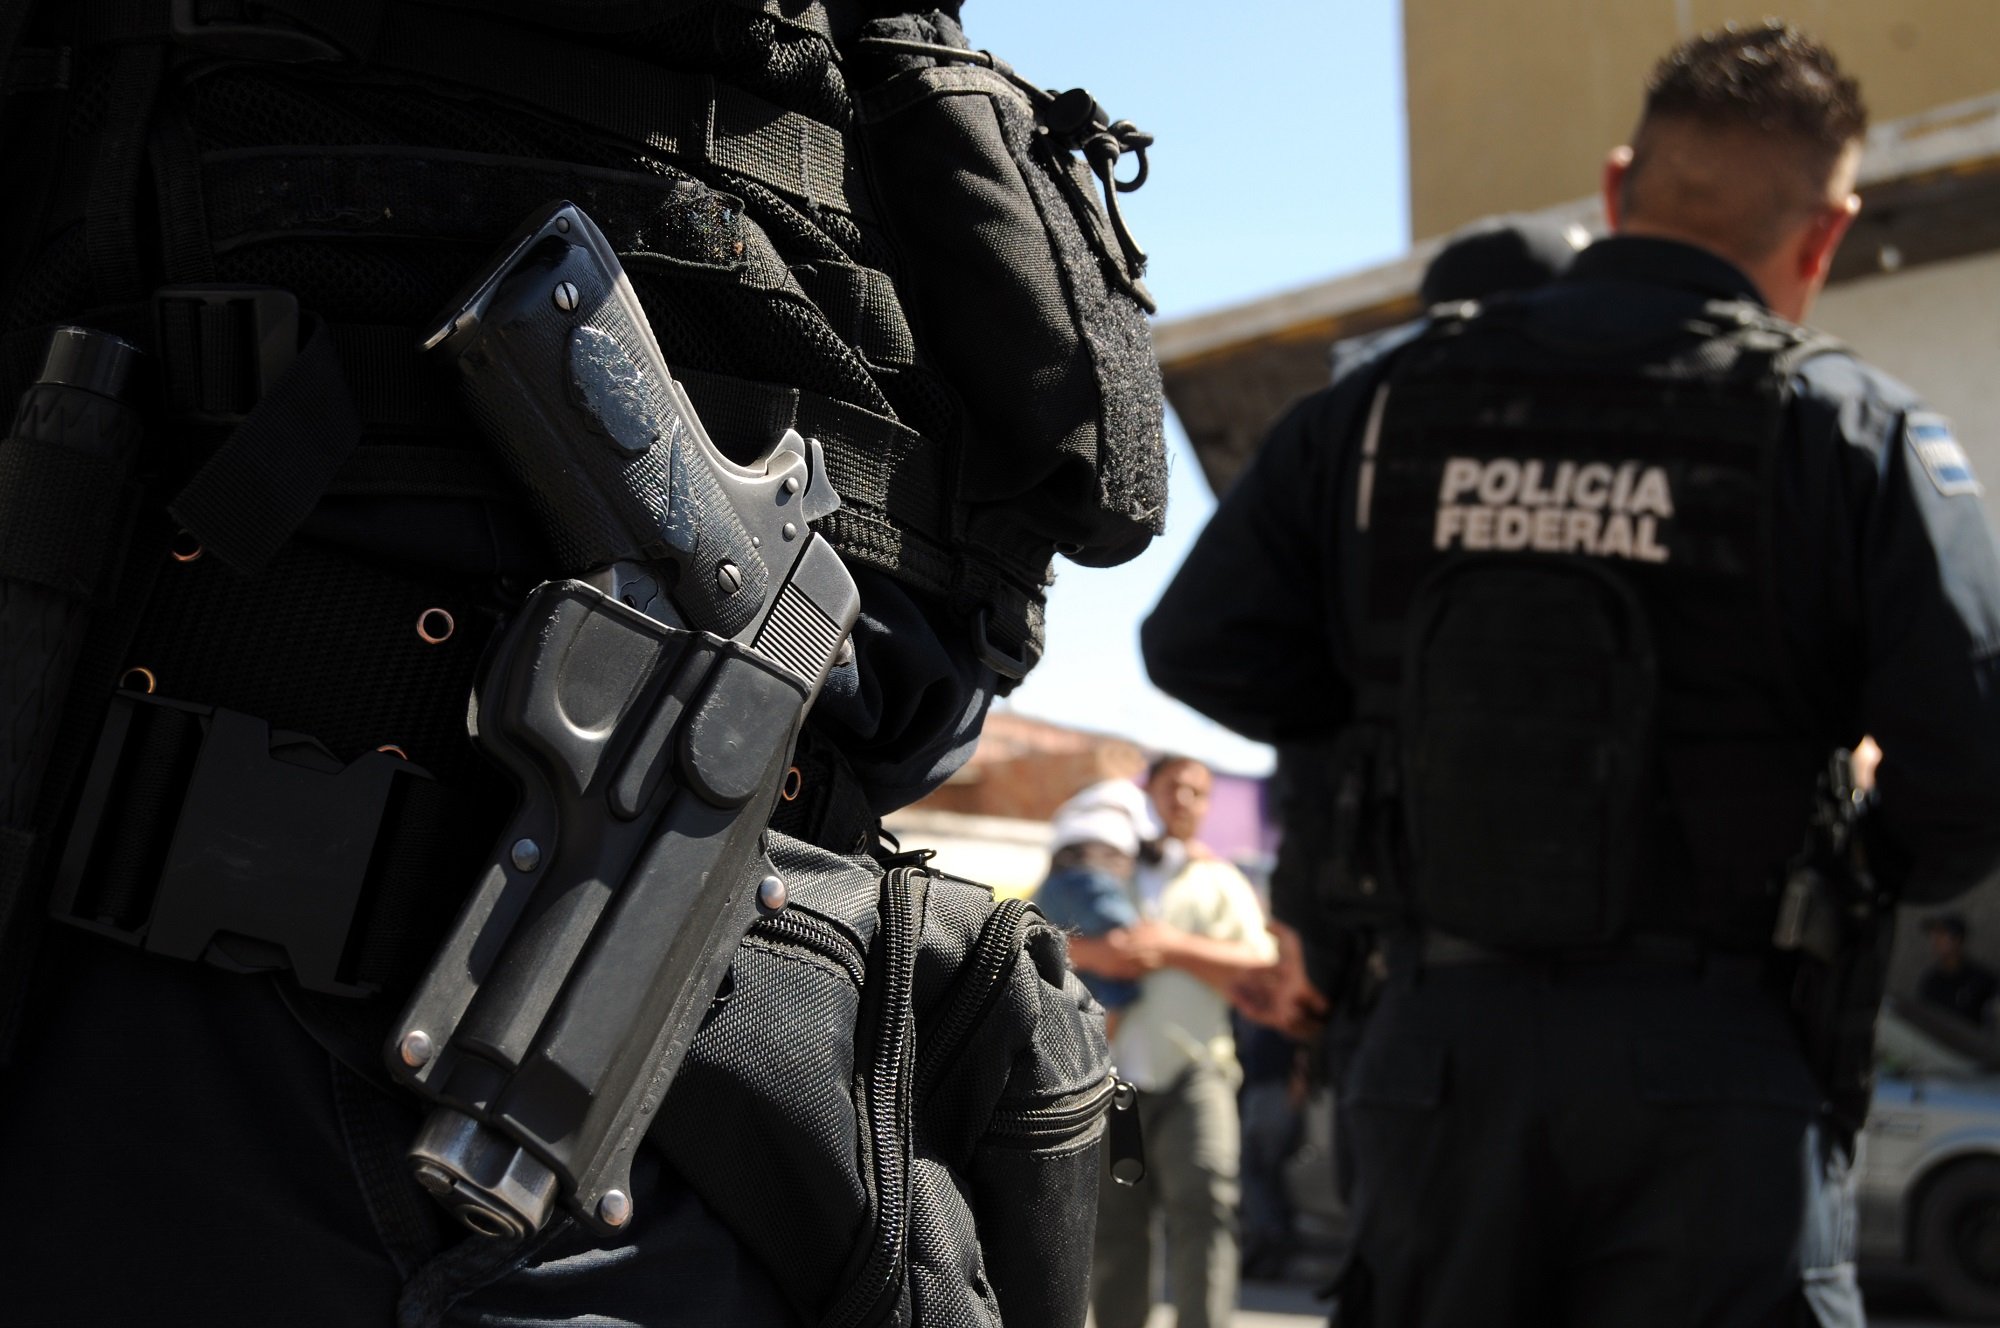 Agentes de la Policía Federal de México. | Foto: Shutterstock